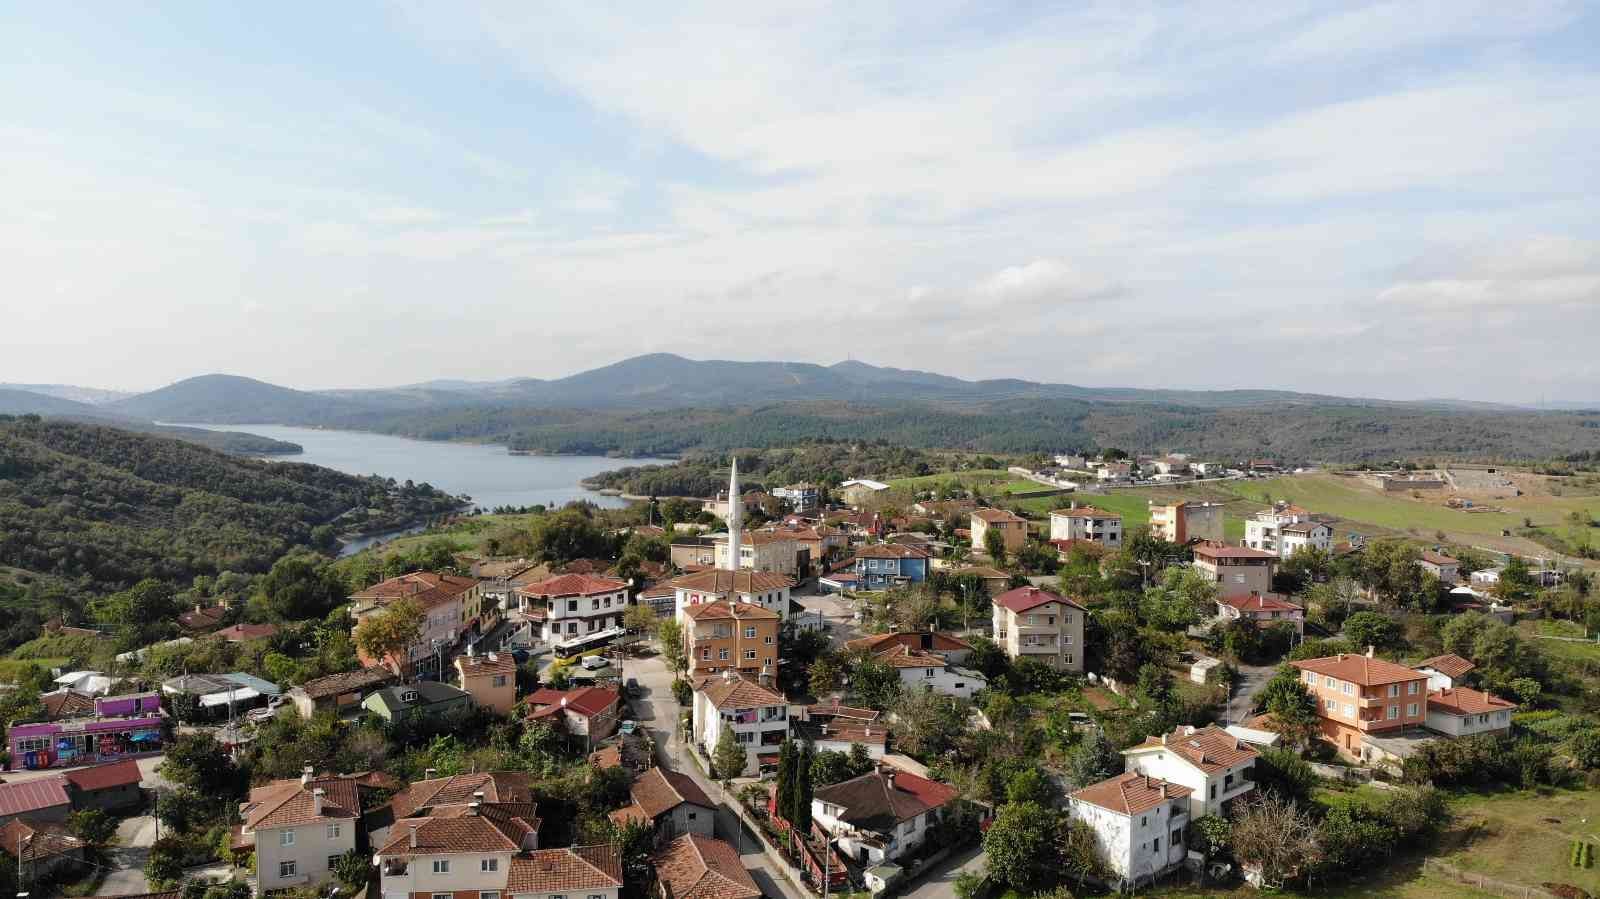 (Özel) Pendik’te adını Kurt askerlerden alan Kurtdoğmuş köyü tarihiyle dikkat çekiyor #istanbul